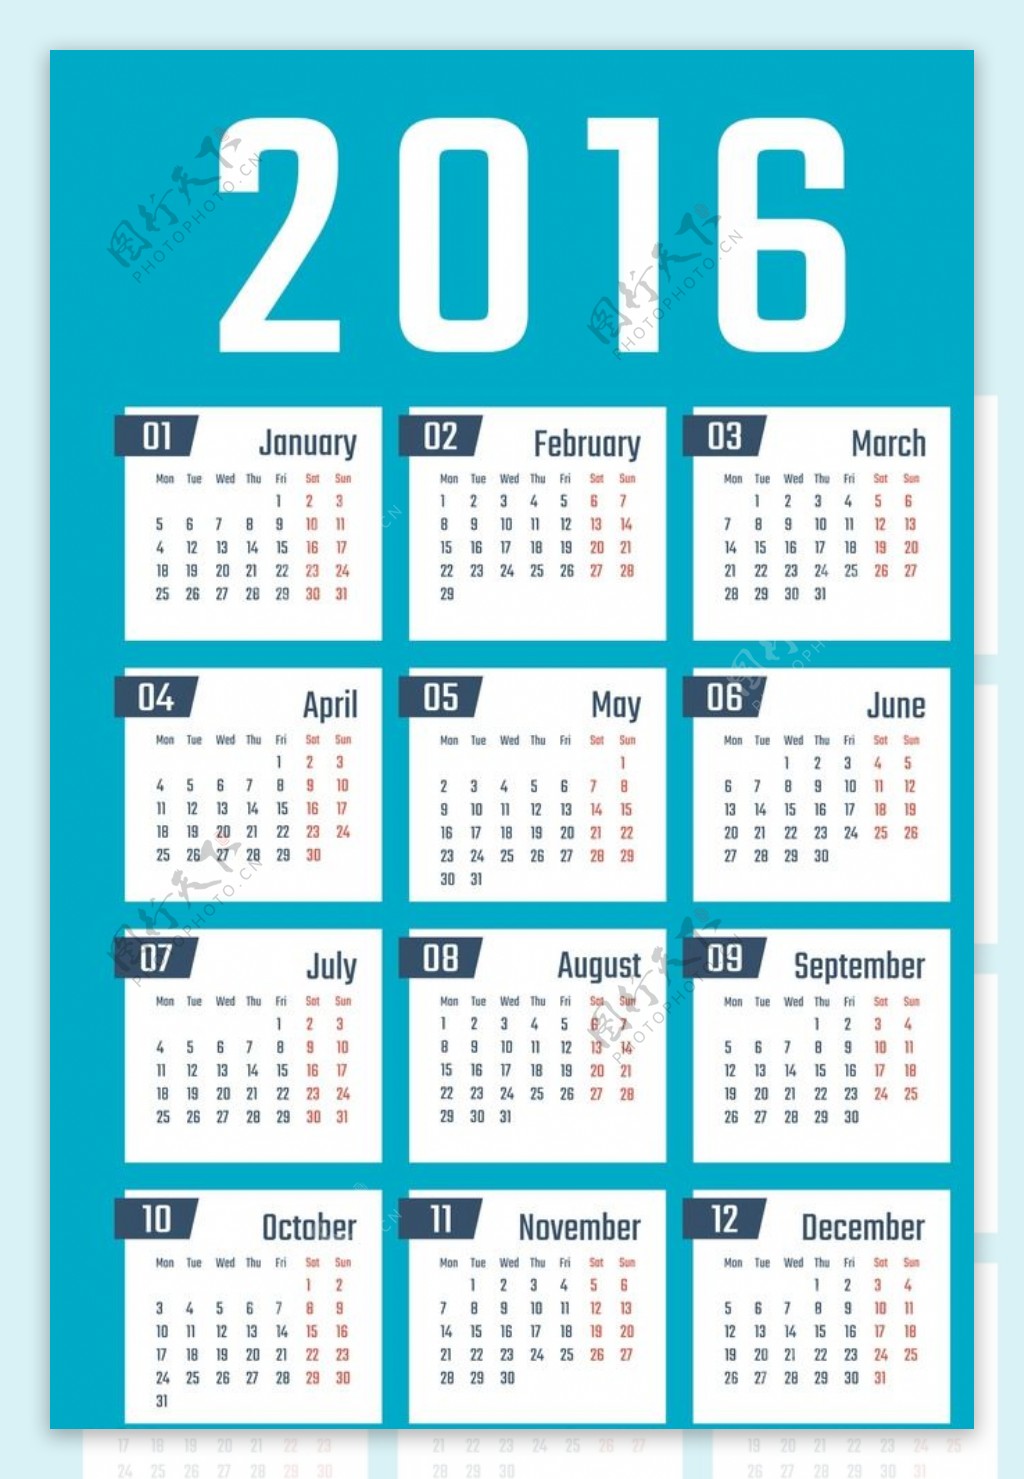 2016年日历全年表 模板E型 免费下载 - 日历精灵